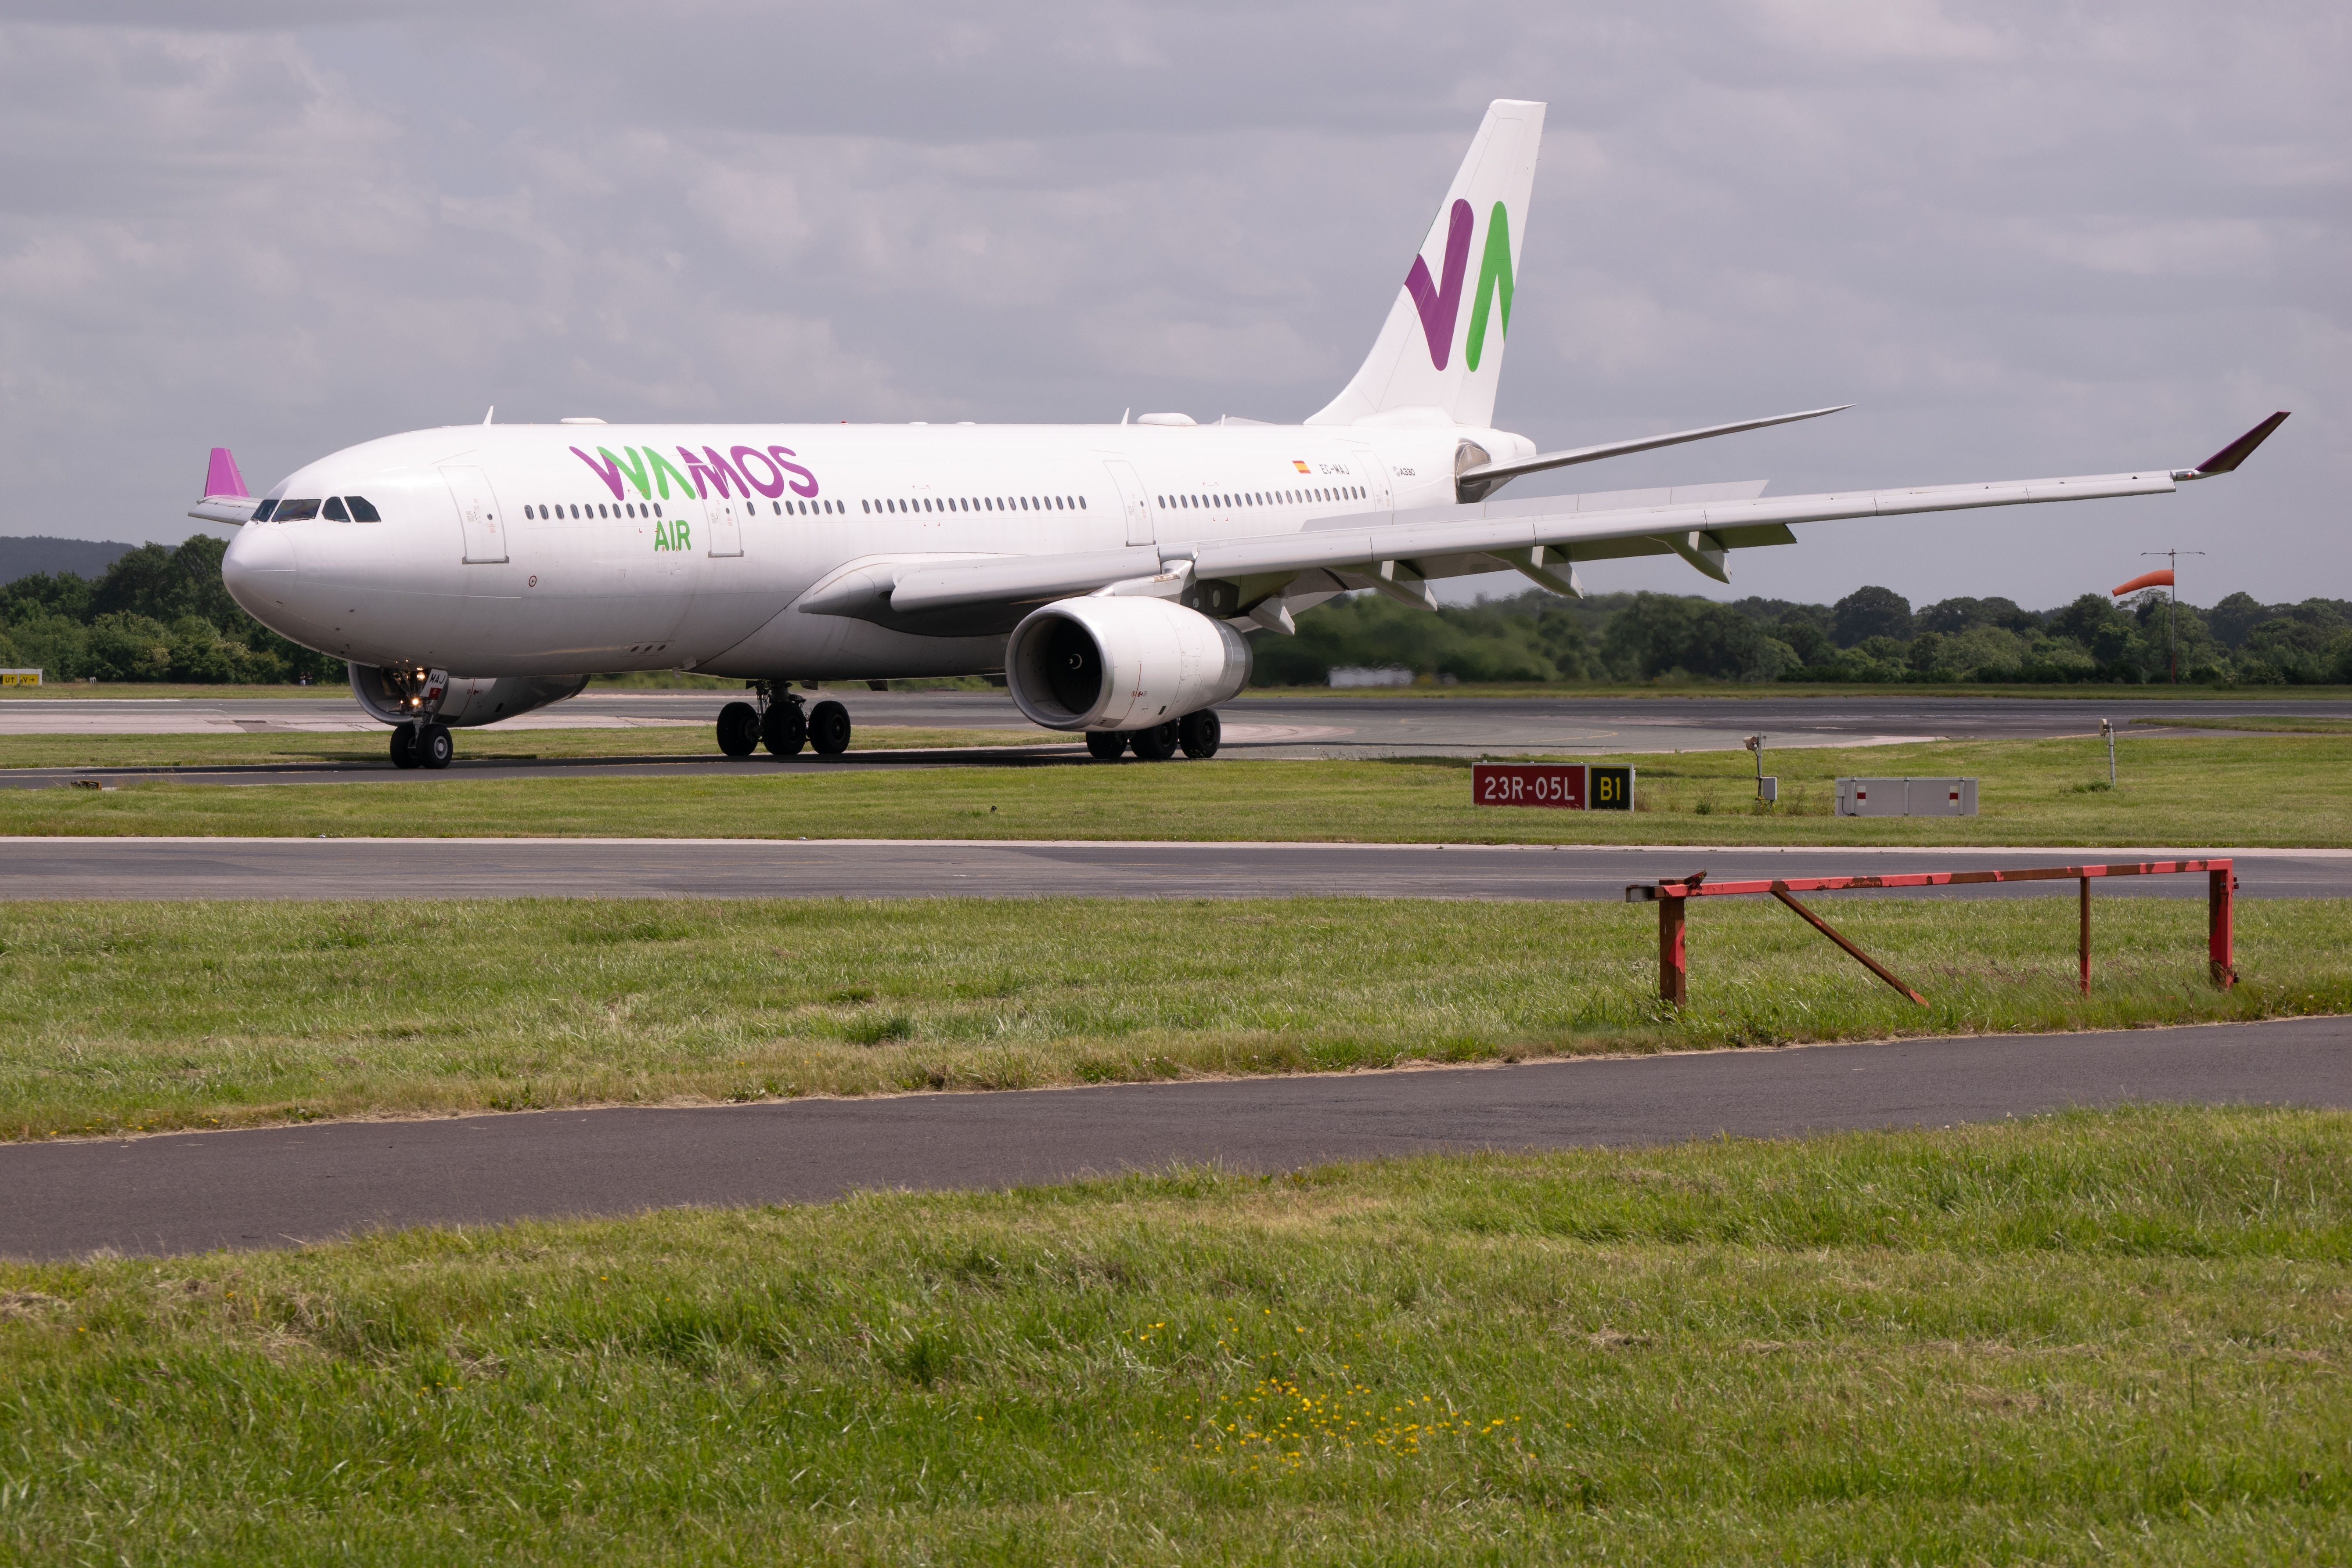 Wamos Air Airbus A330 on runway at Manchester Airport